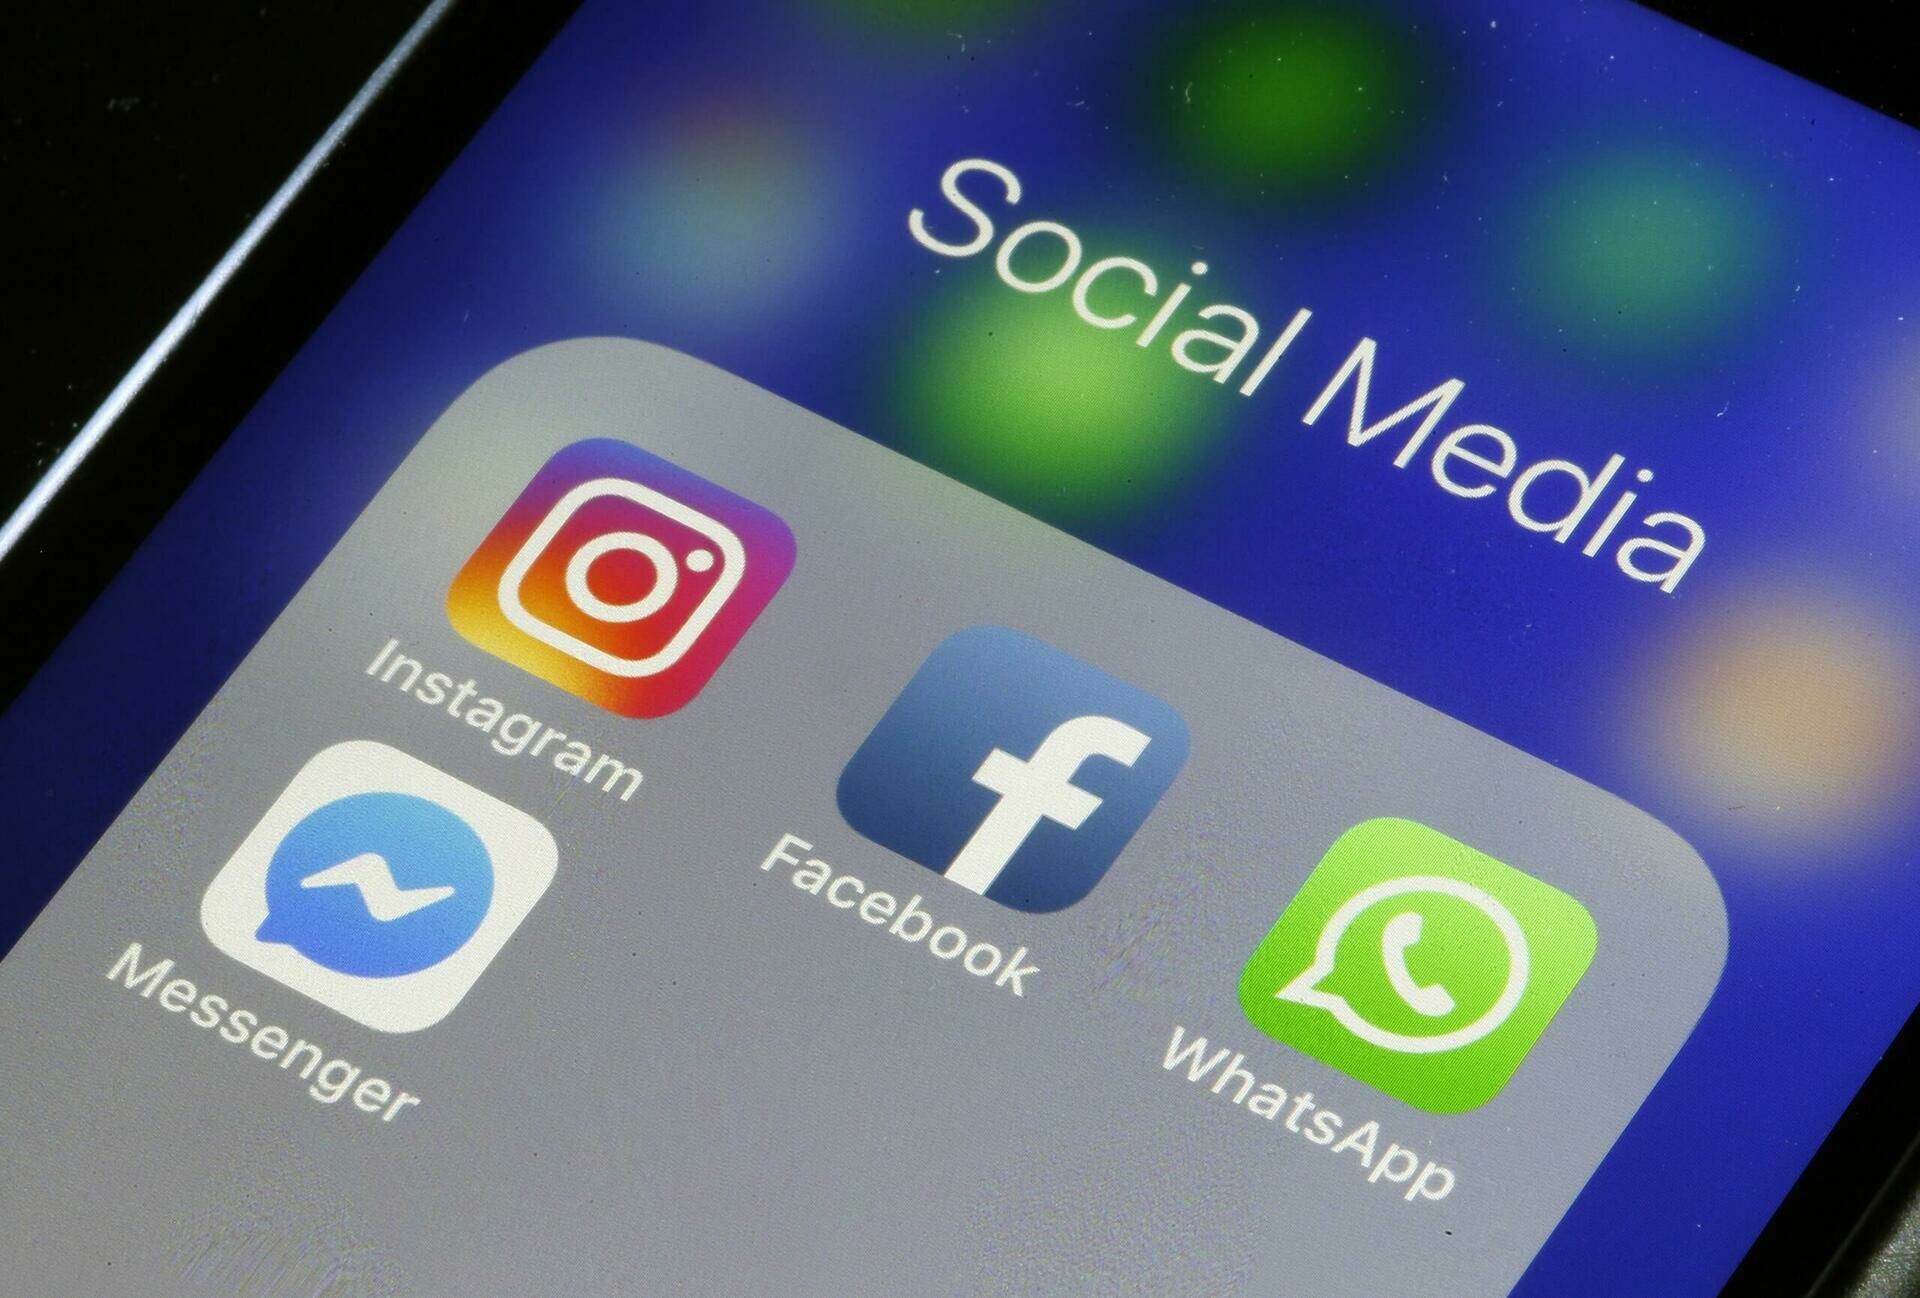 Пользователи пожаловались на сбой в работе Facebook, Instagram и WhatsApp